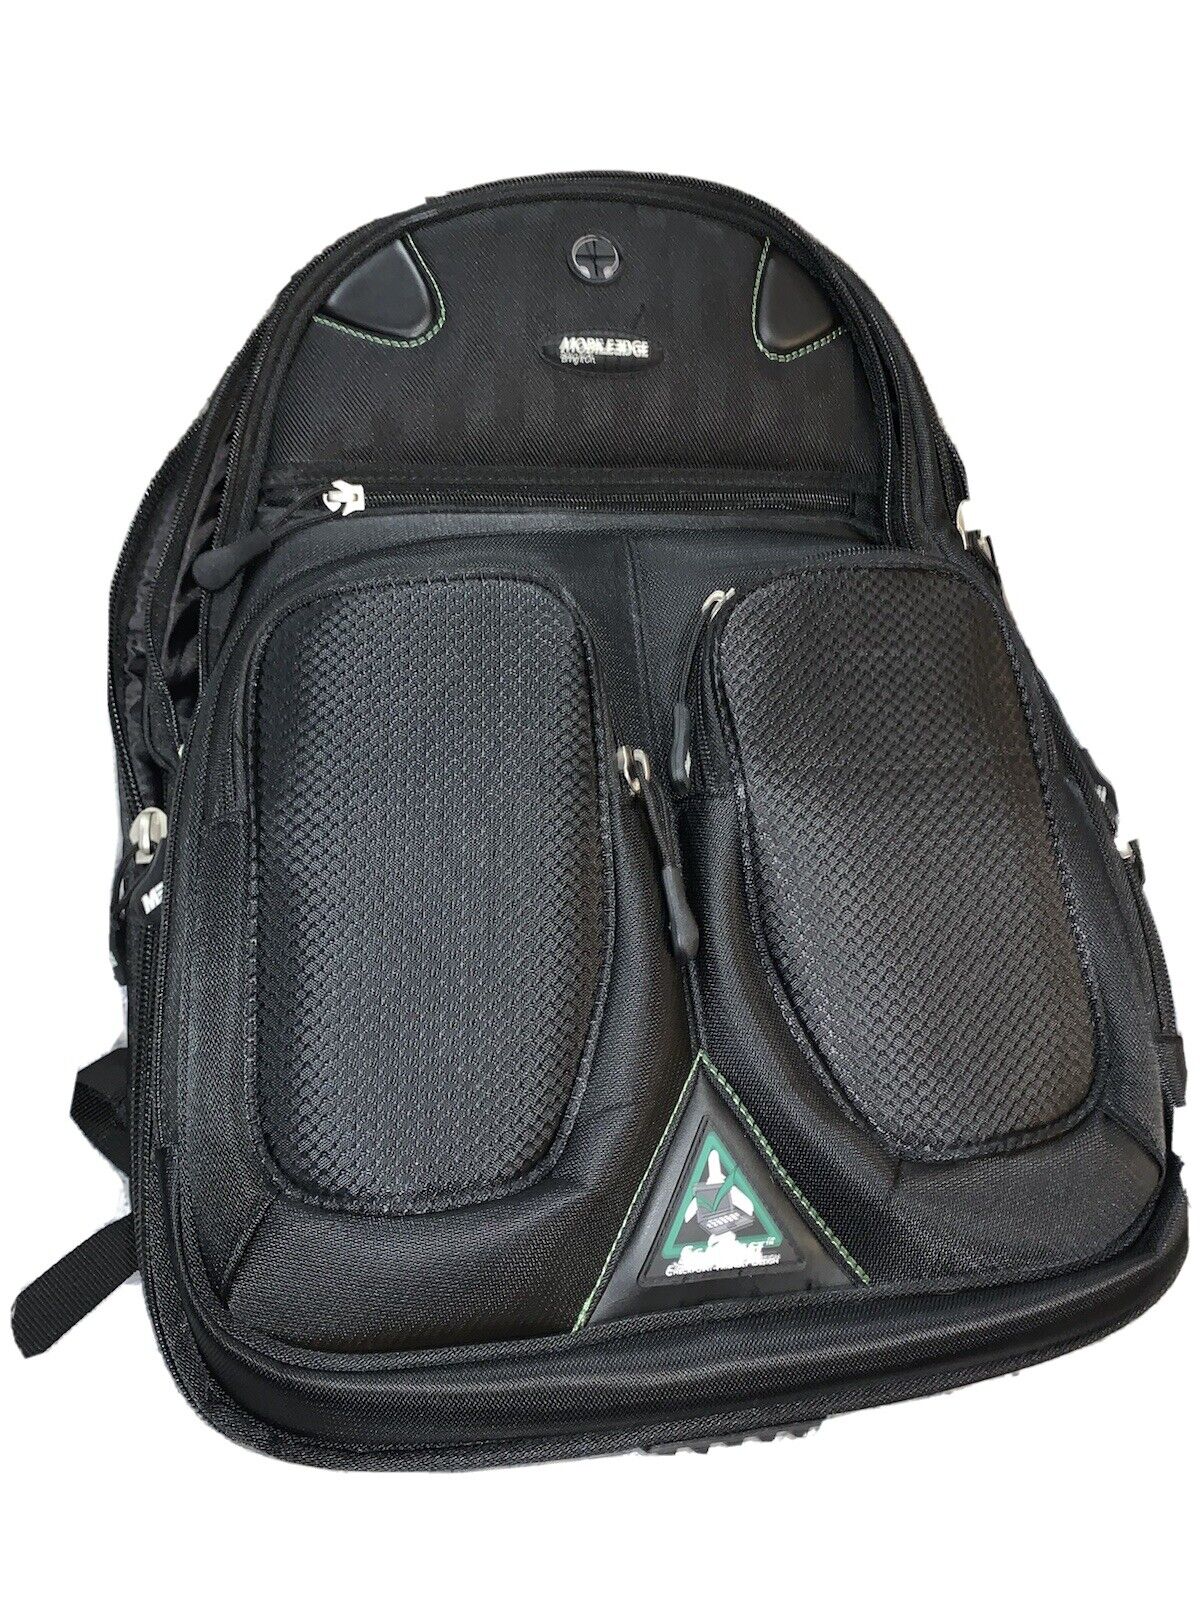 Mobile Edge MESFBP2.0 Backpack